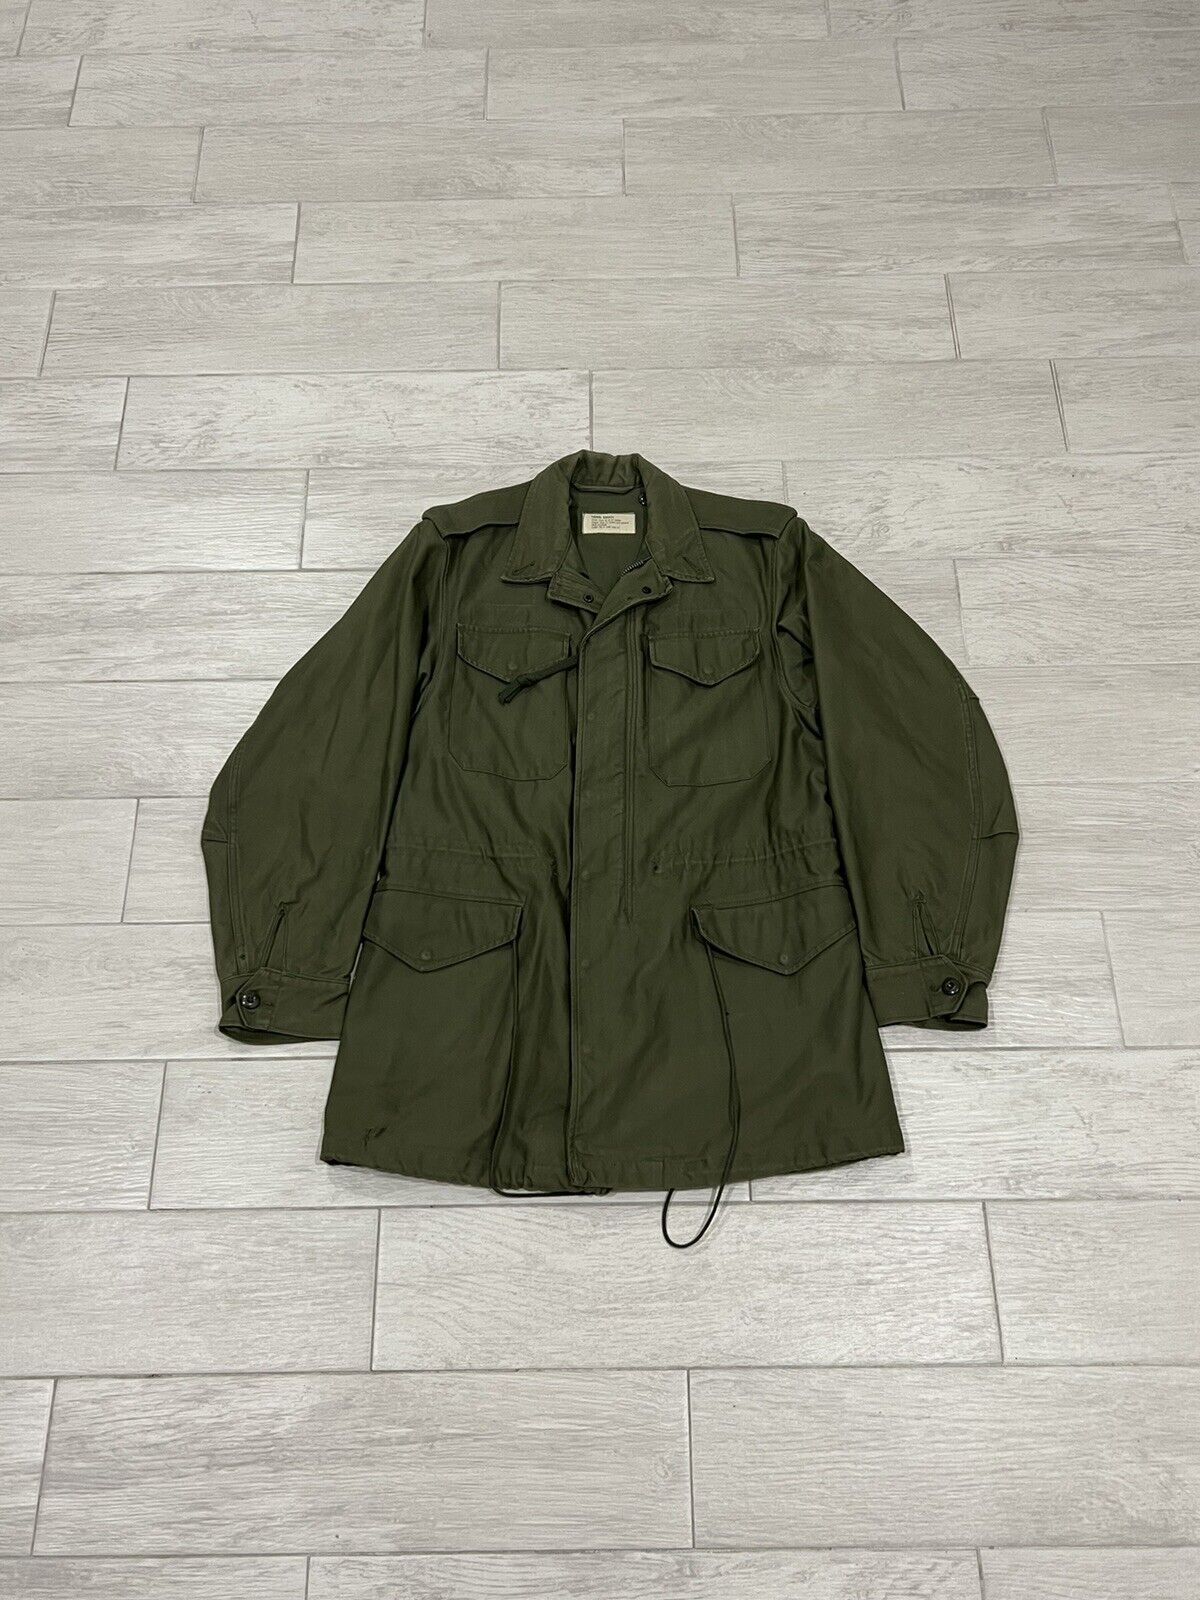 Vintage Vietnam OG-107 Sateen Wind Resistant Coat Jacket Men’s Size Small Long